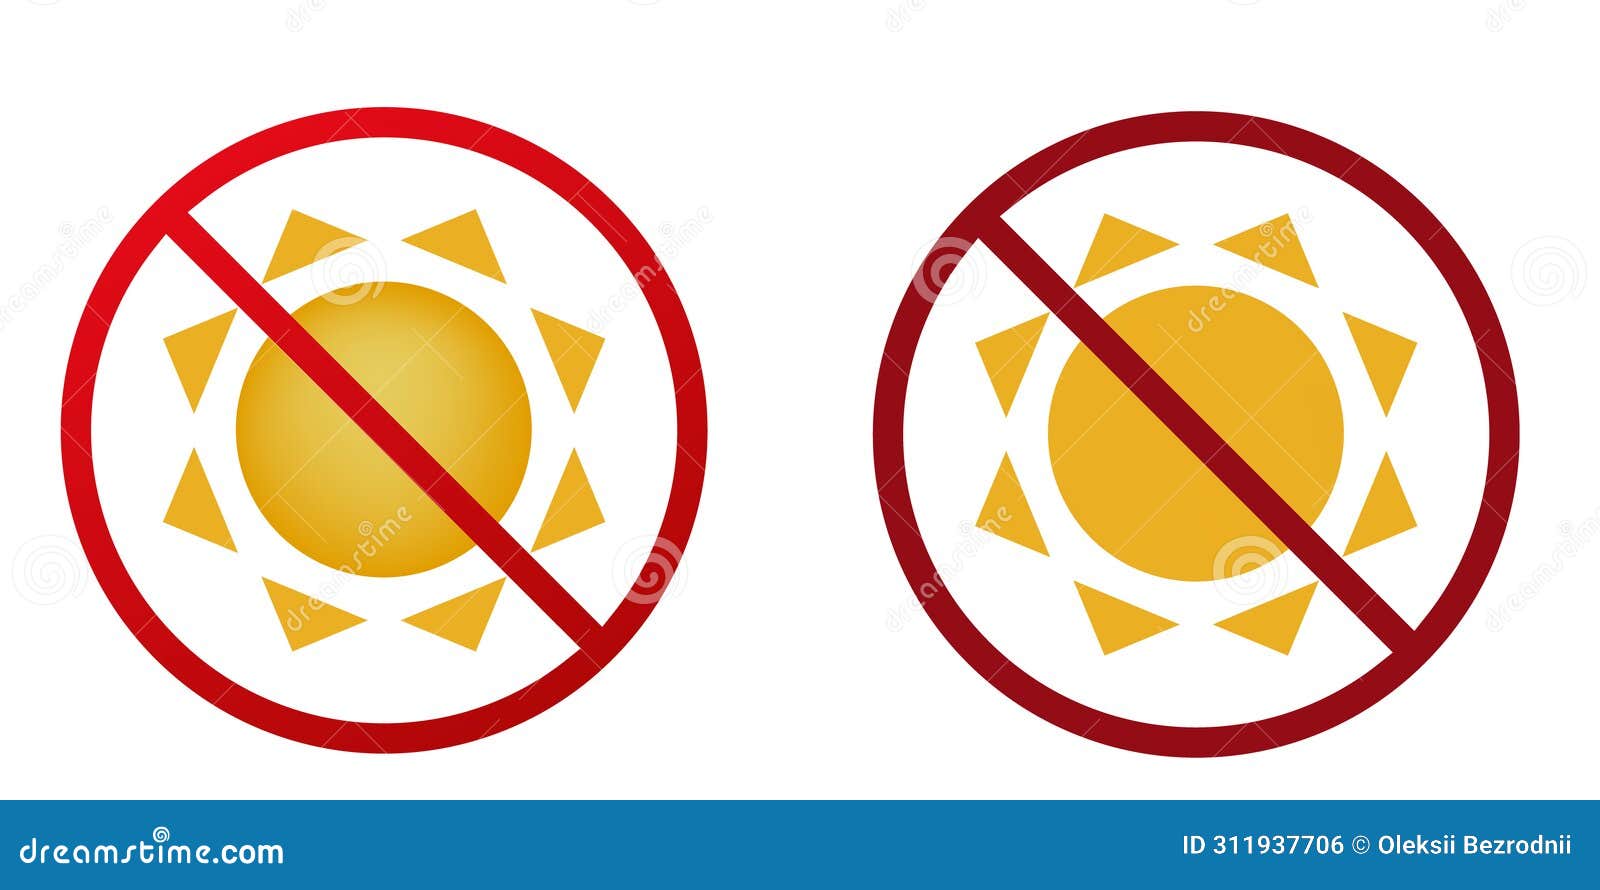 sun ban prohibit icon. not allowed hot sun.